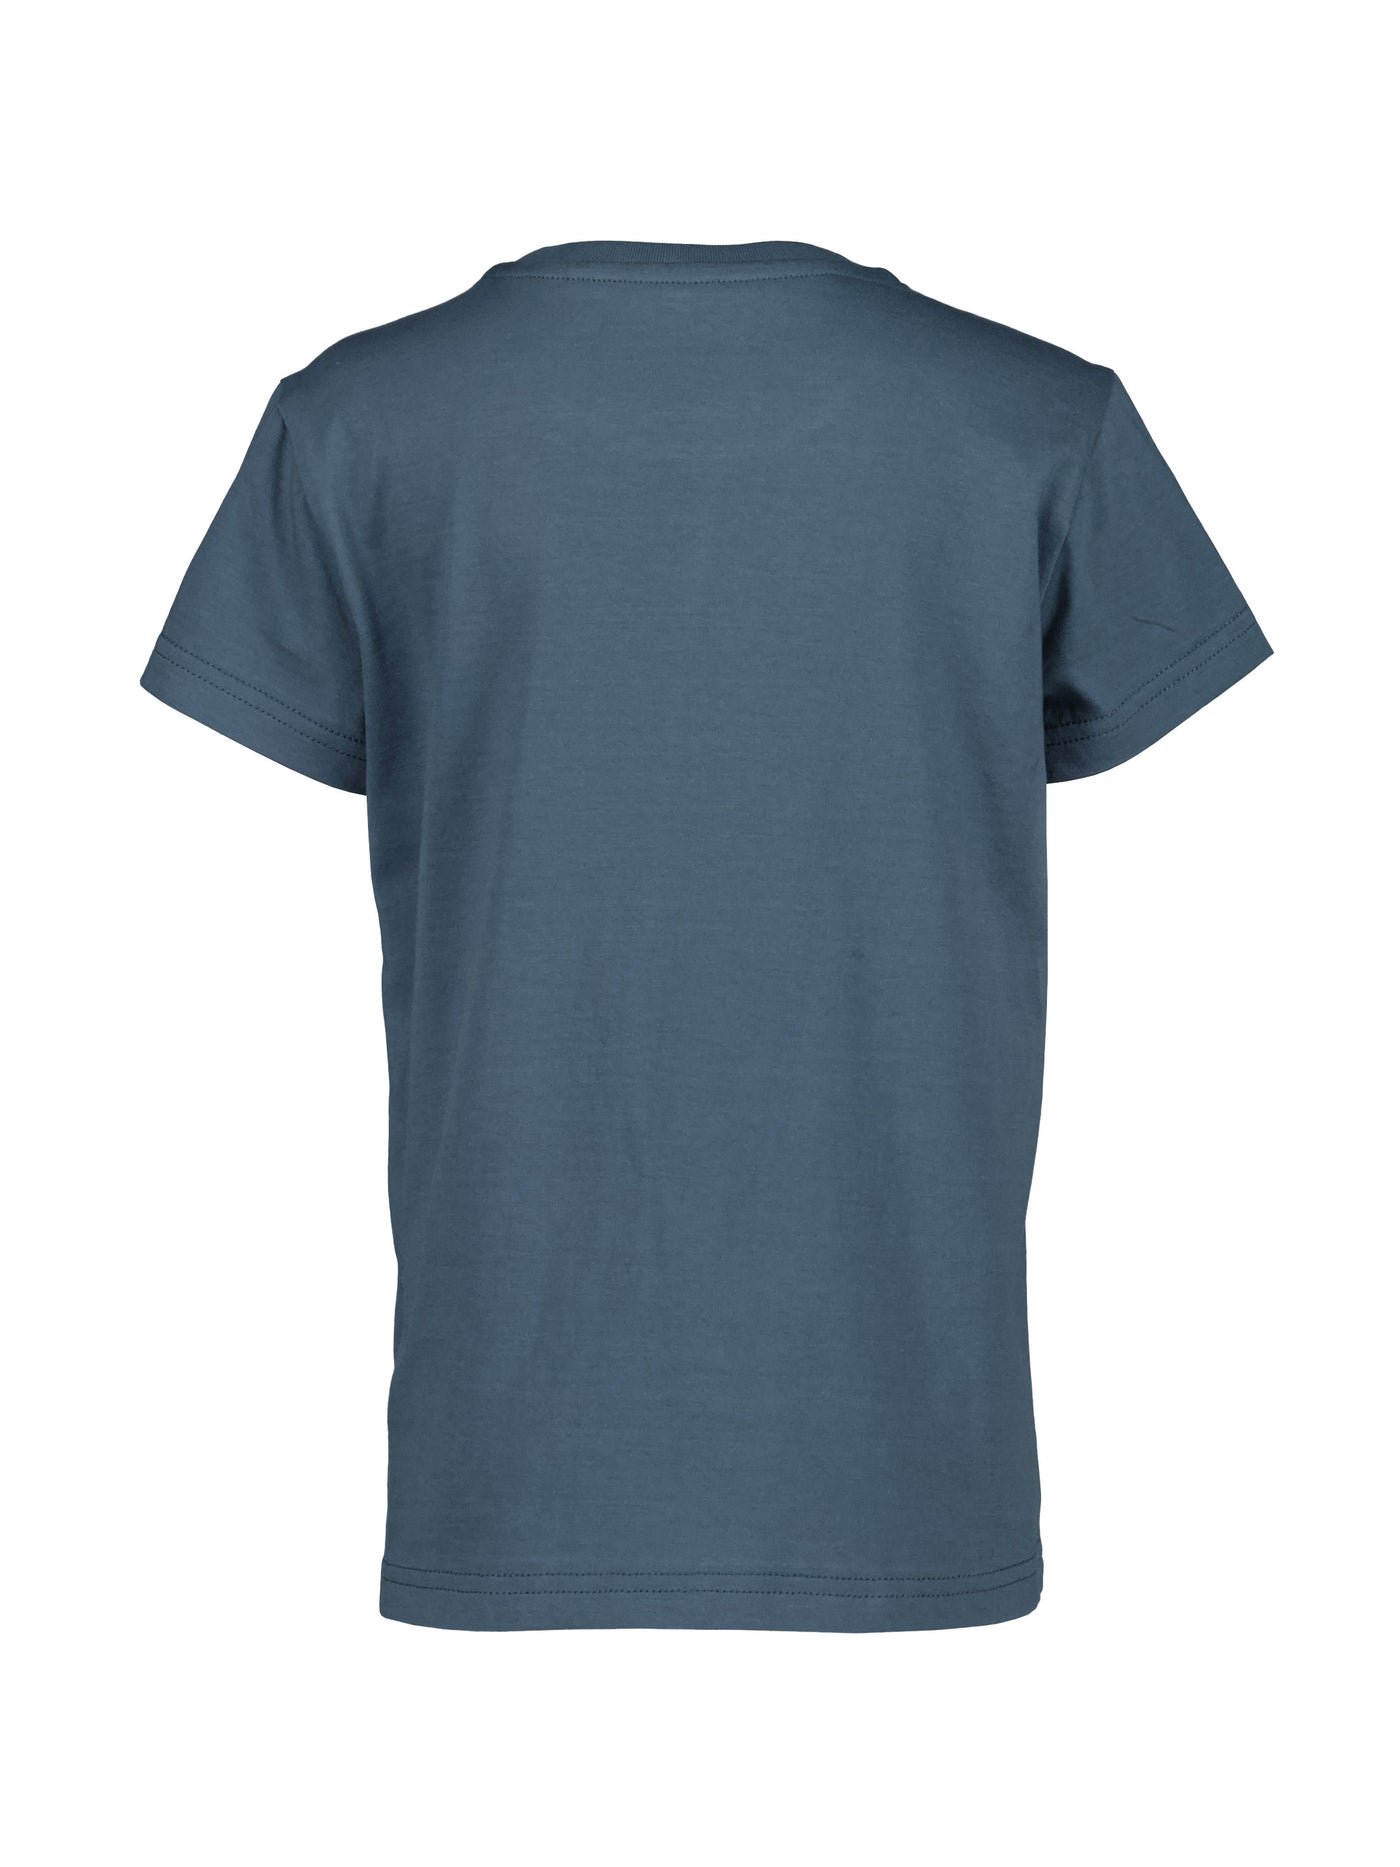 Didriksonsin lasten ja nuorten Mynta logo t-paita sinisen sävyssä takaa kuvattuna